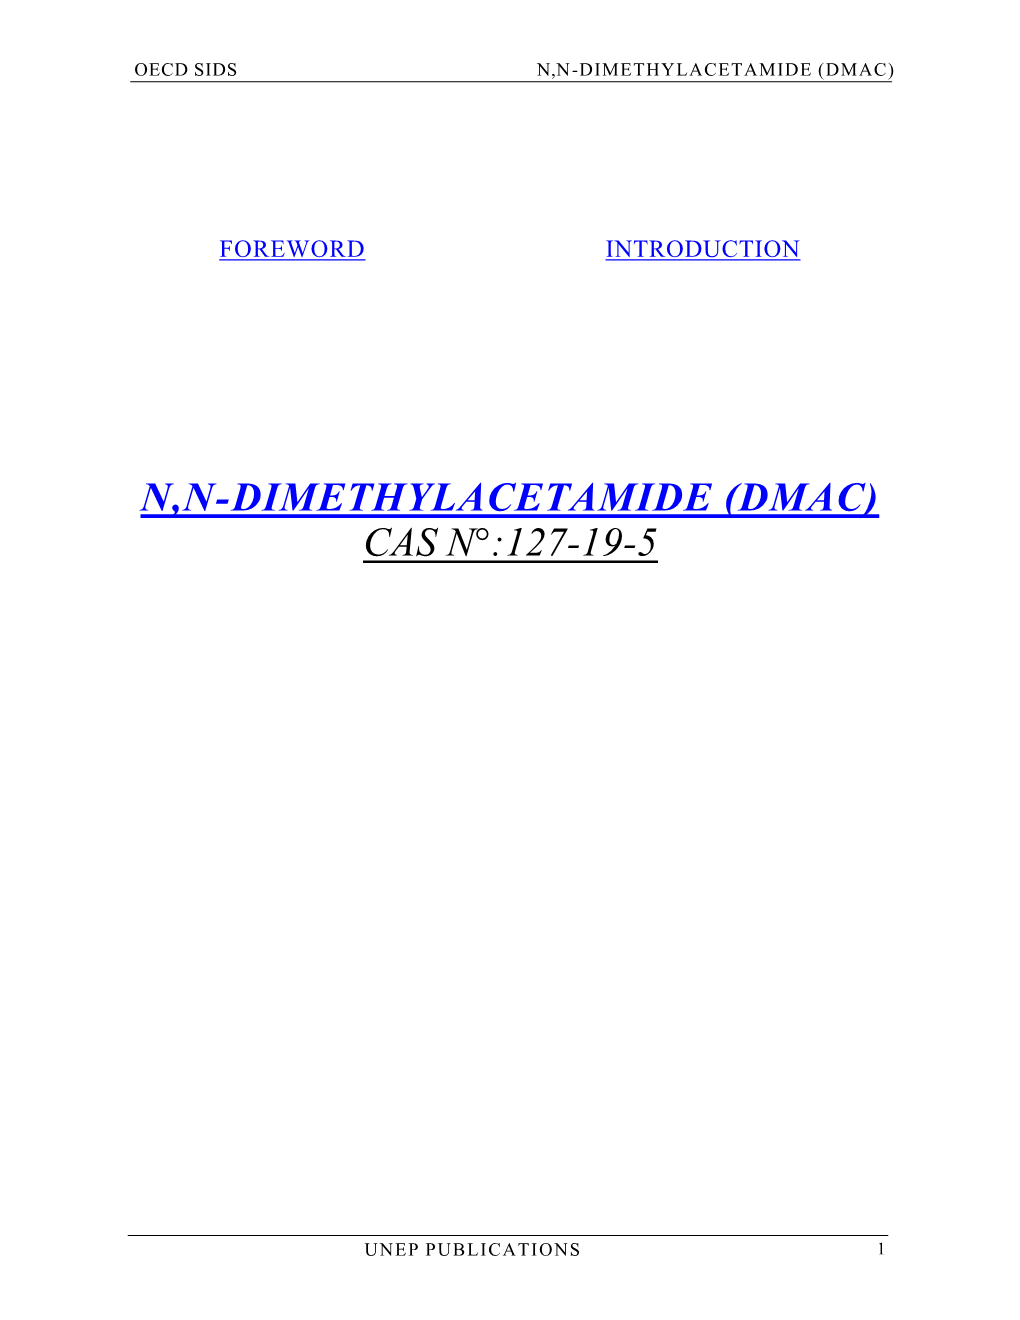 N,N-Dimethylacetamide (Dmac) Cas N°:127-19-5